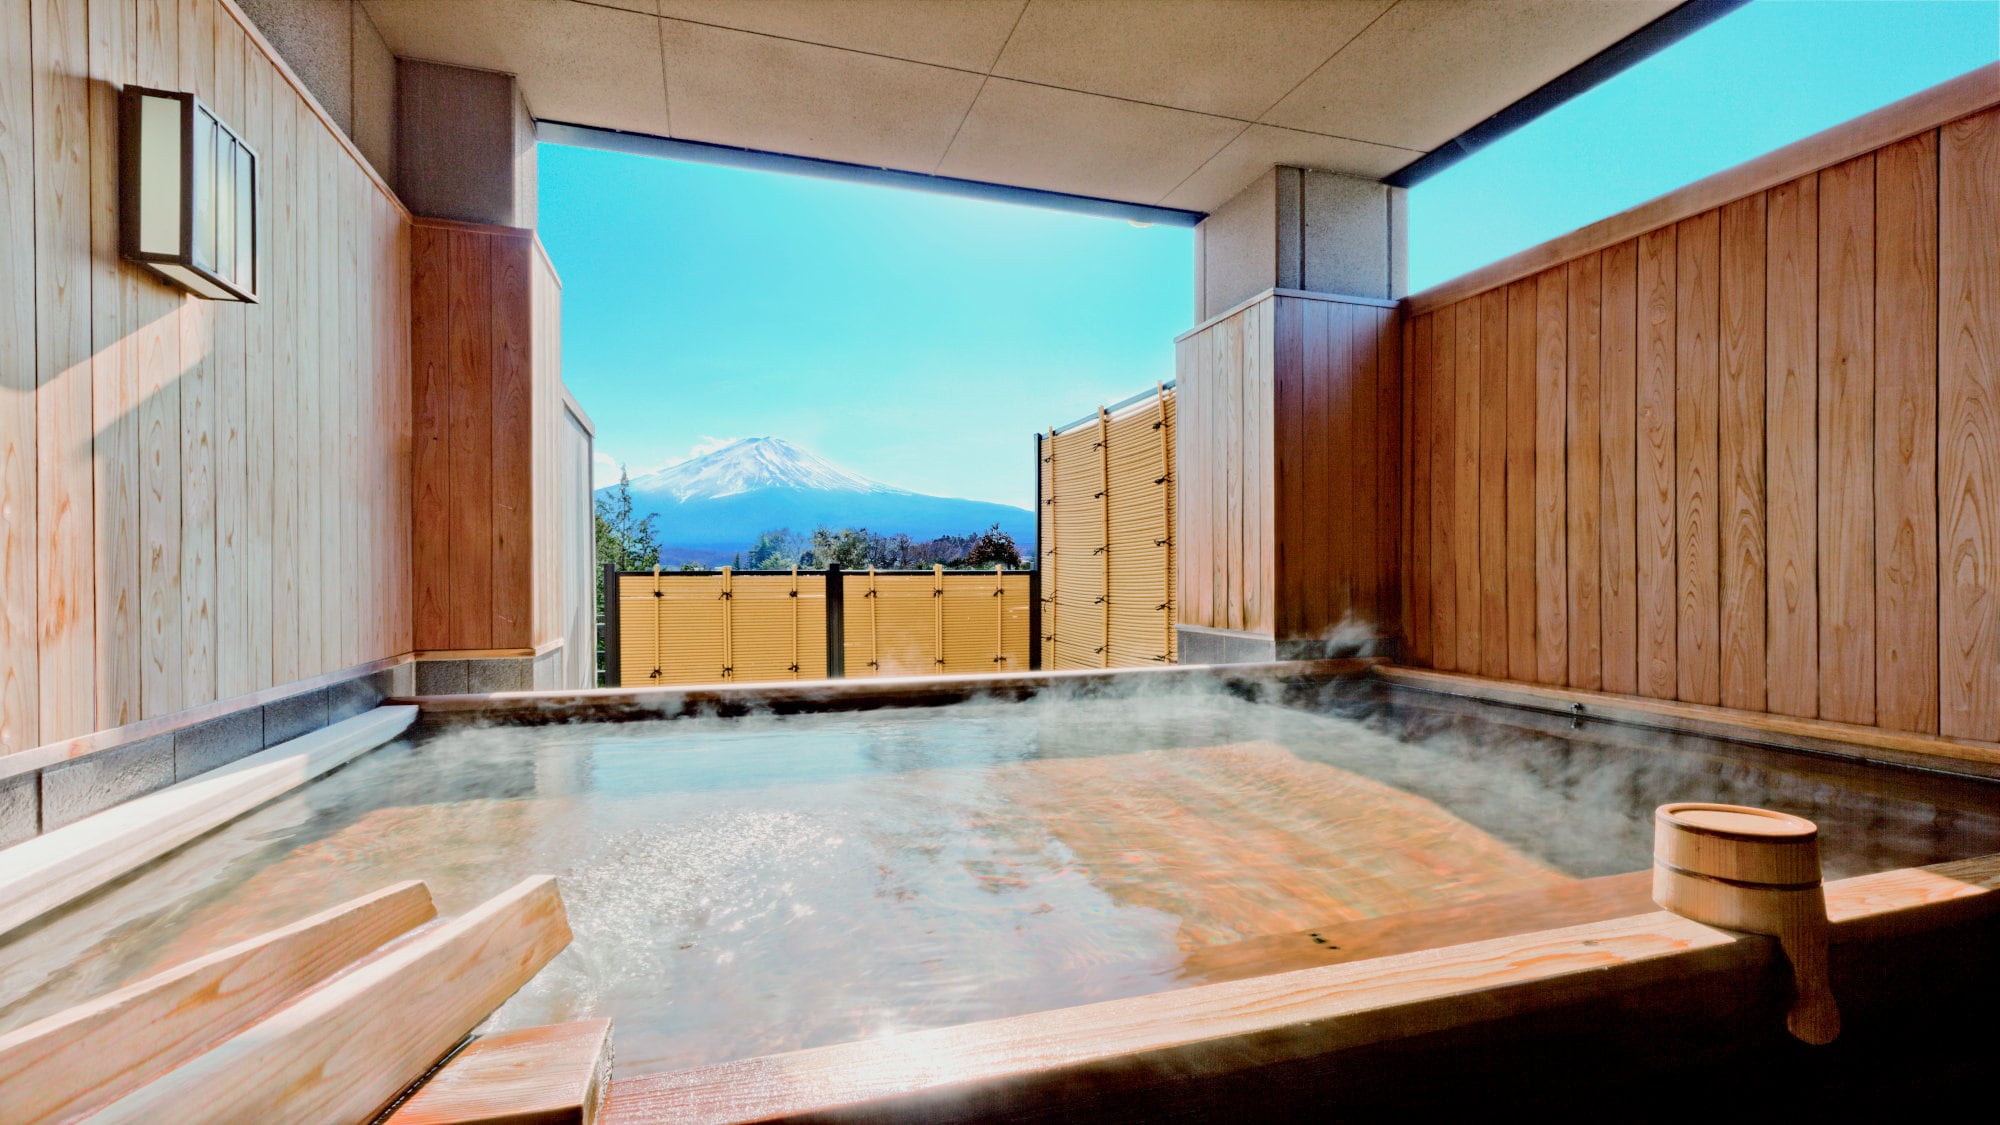 Miharashi open-air bath "Fuji no Yu"